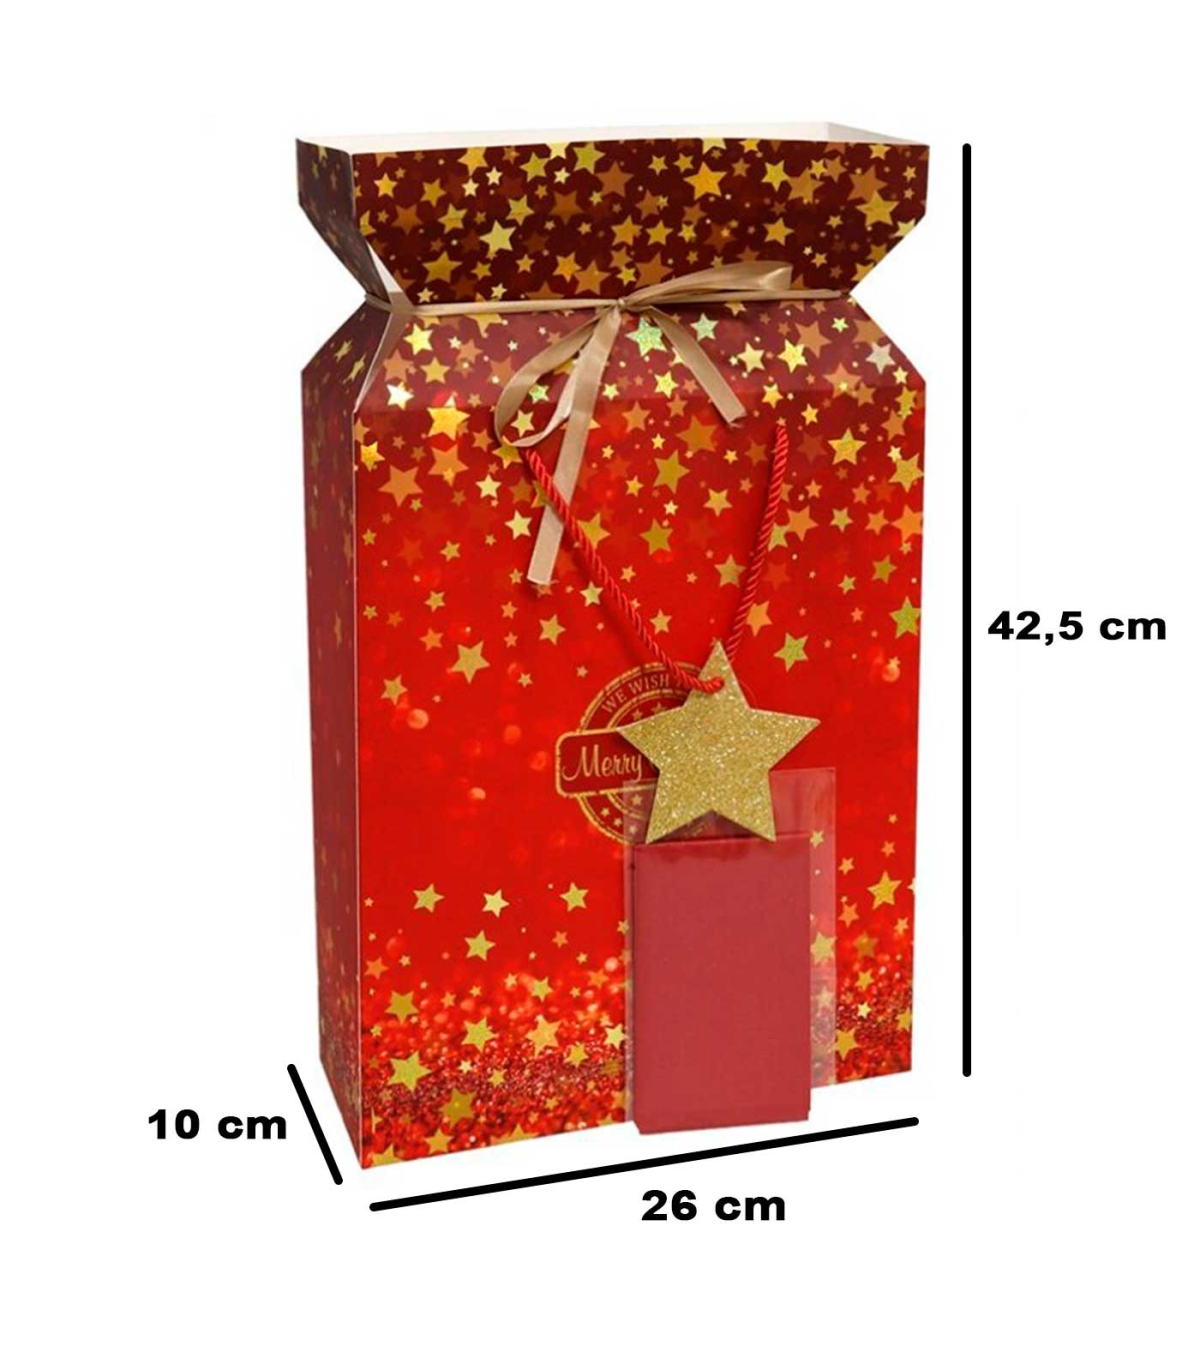 Tradineur - Caja de cartón para lote de Navidad, caja plegable con asas,  incluye papel interior, guardar regalos, botellas vino